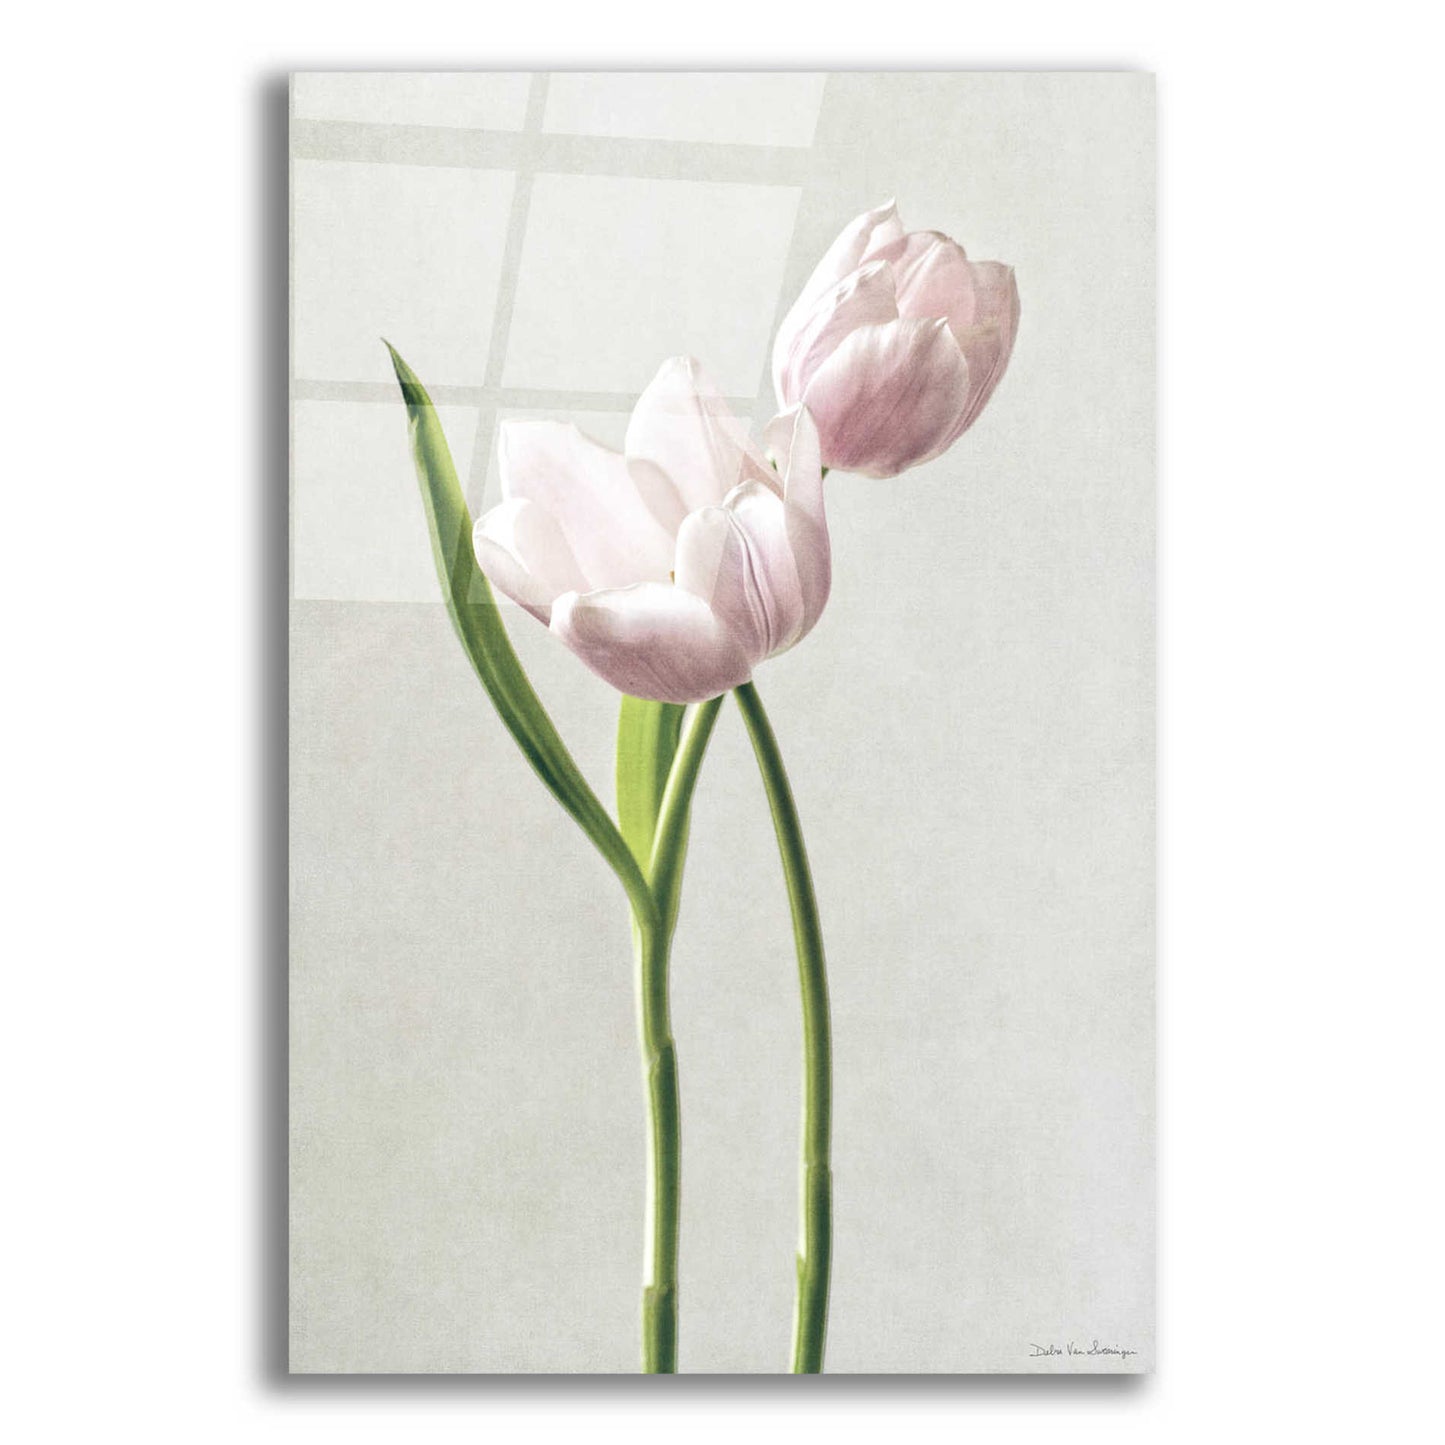 Epic Art 'Light Tulips III' by Debra Van Swearingen, Acrylic Glass Wall Art,16x24